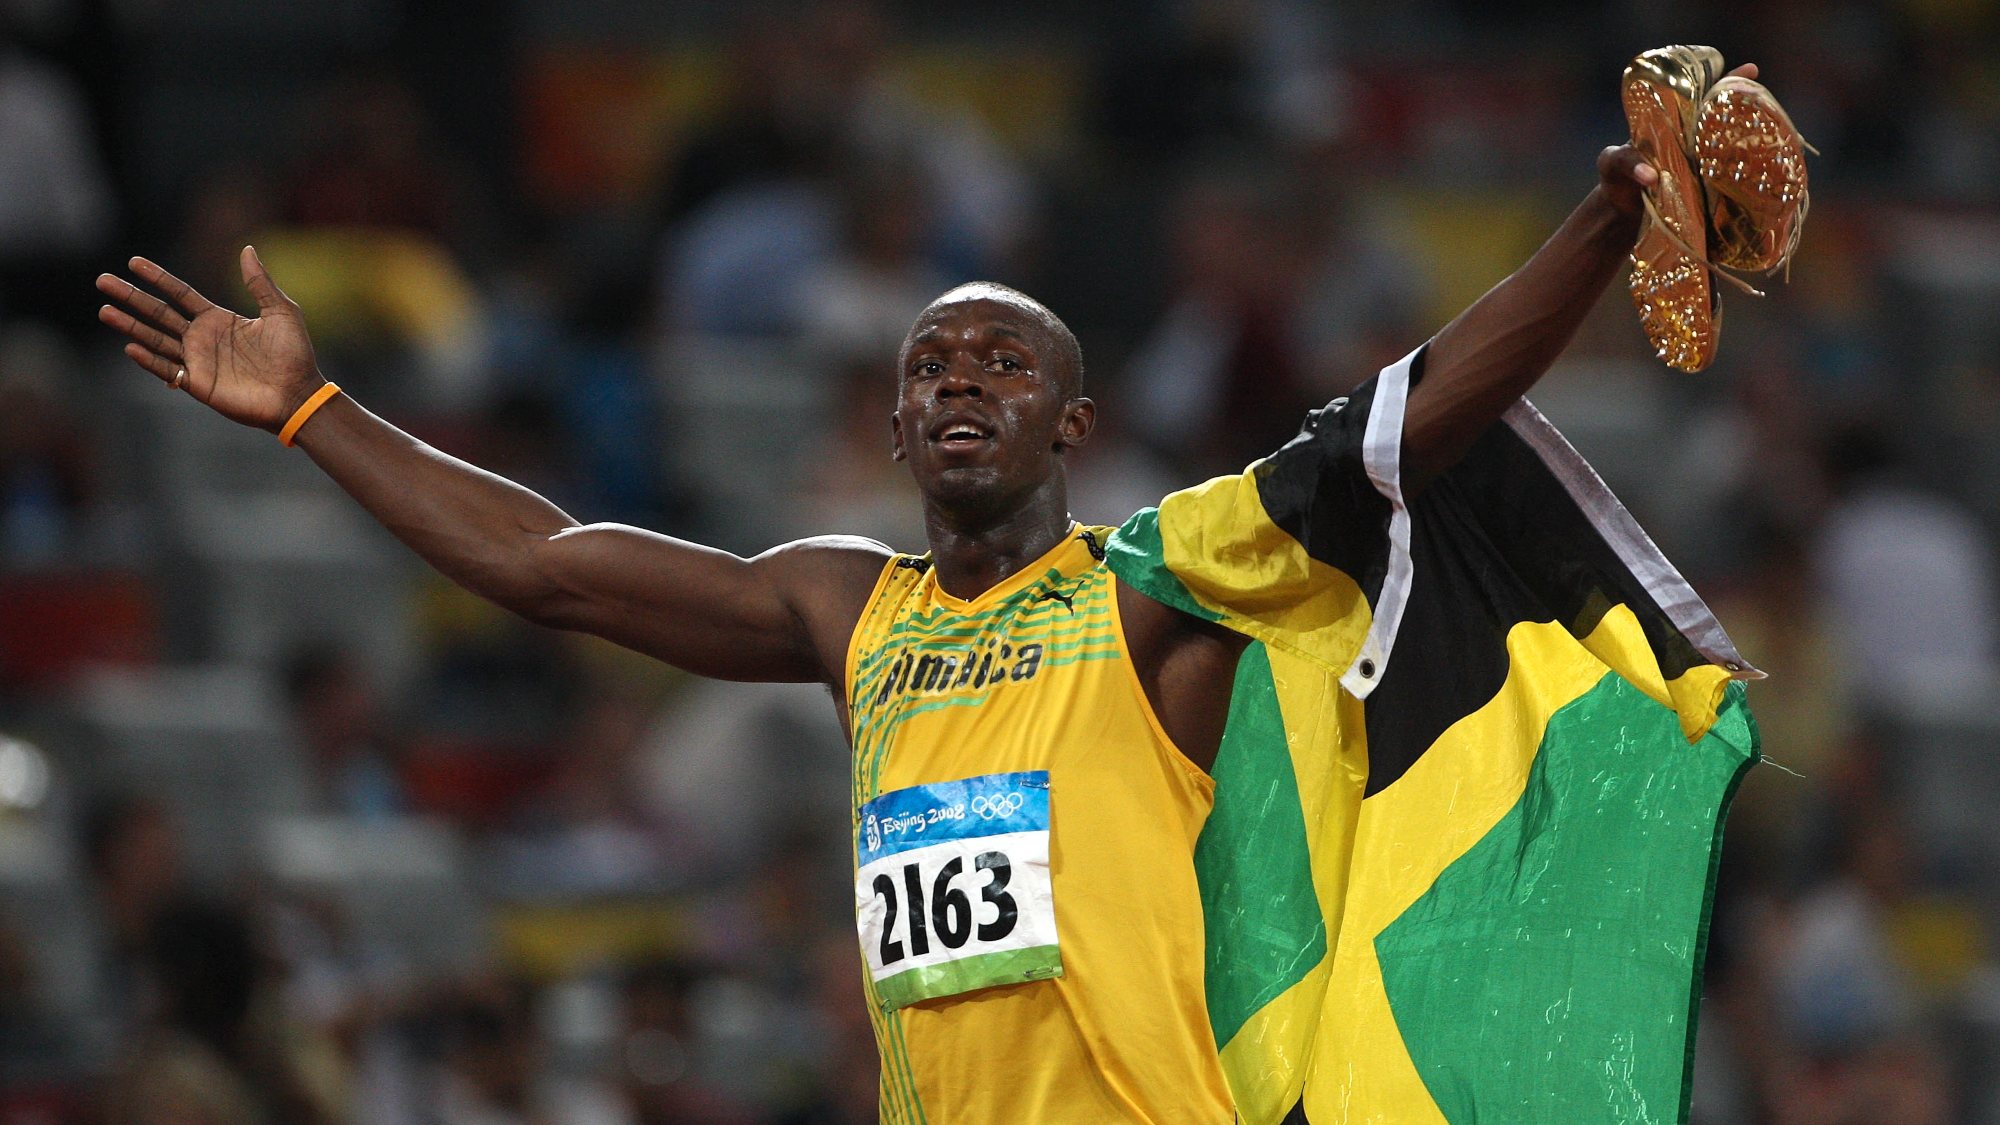 Usain Bolt ganhou a medalha de ouro nos 100 e nos 200 metros com recorde mundial nos Jogos de 2008, ficando sem o terceiro ouro nos 4x100 metros devido a um teste anti-doping positivo de Nesta Caster